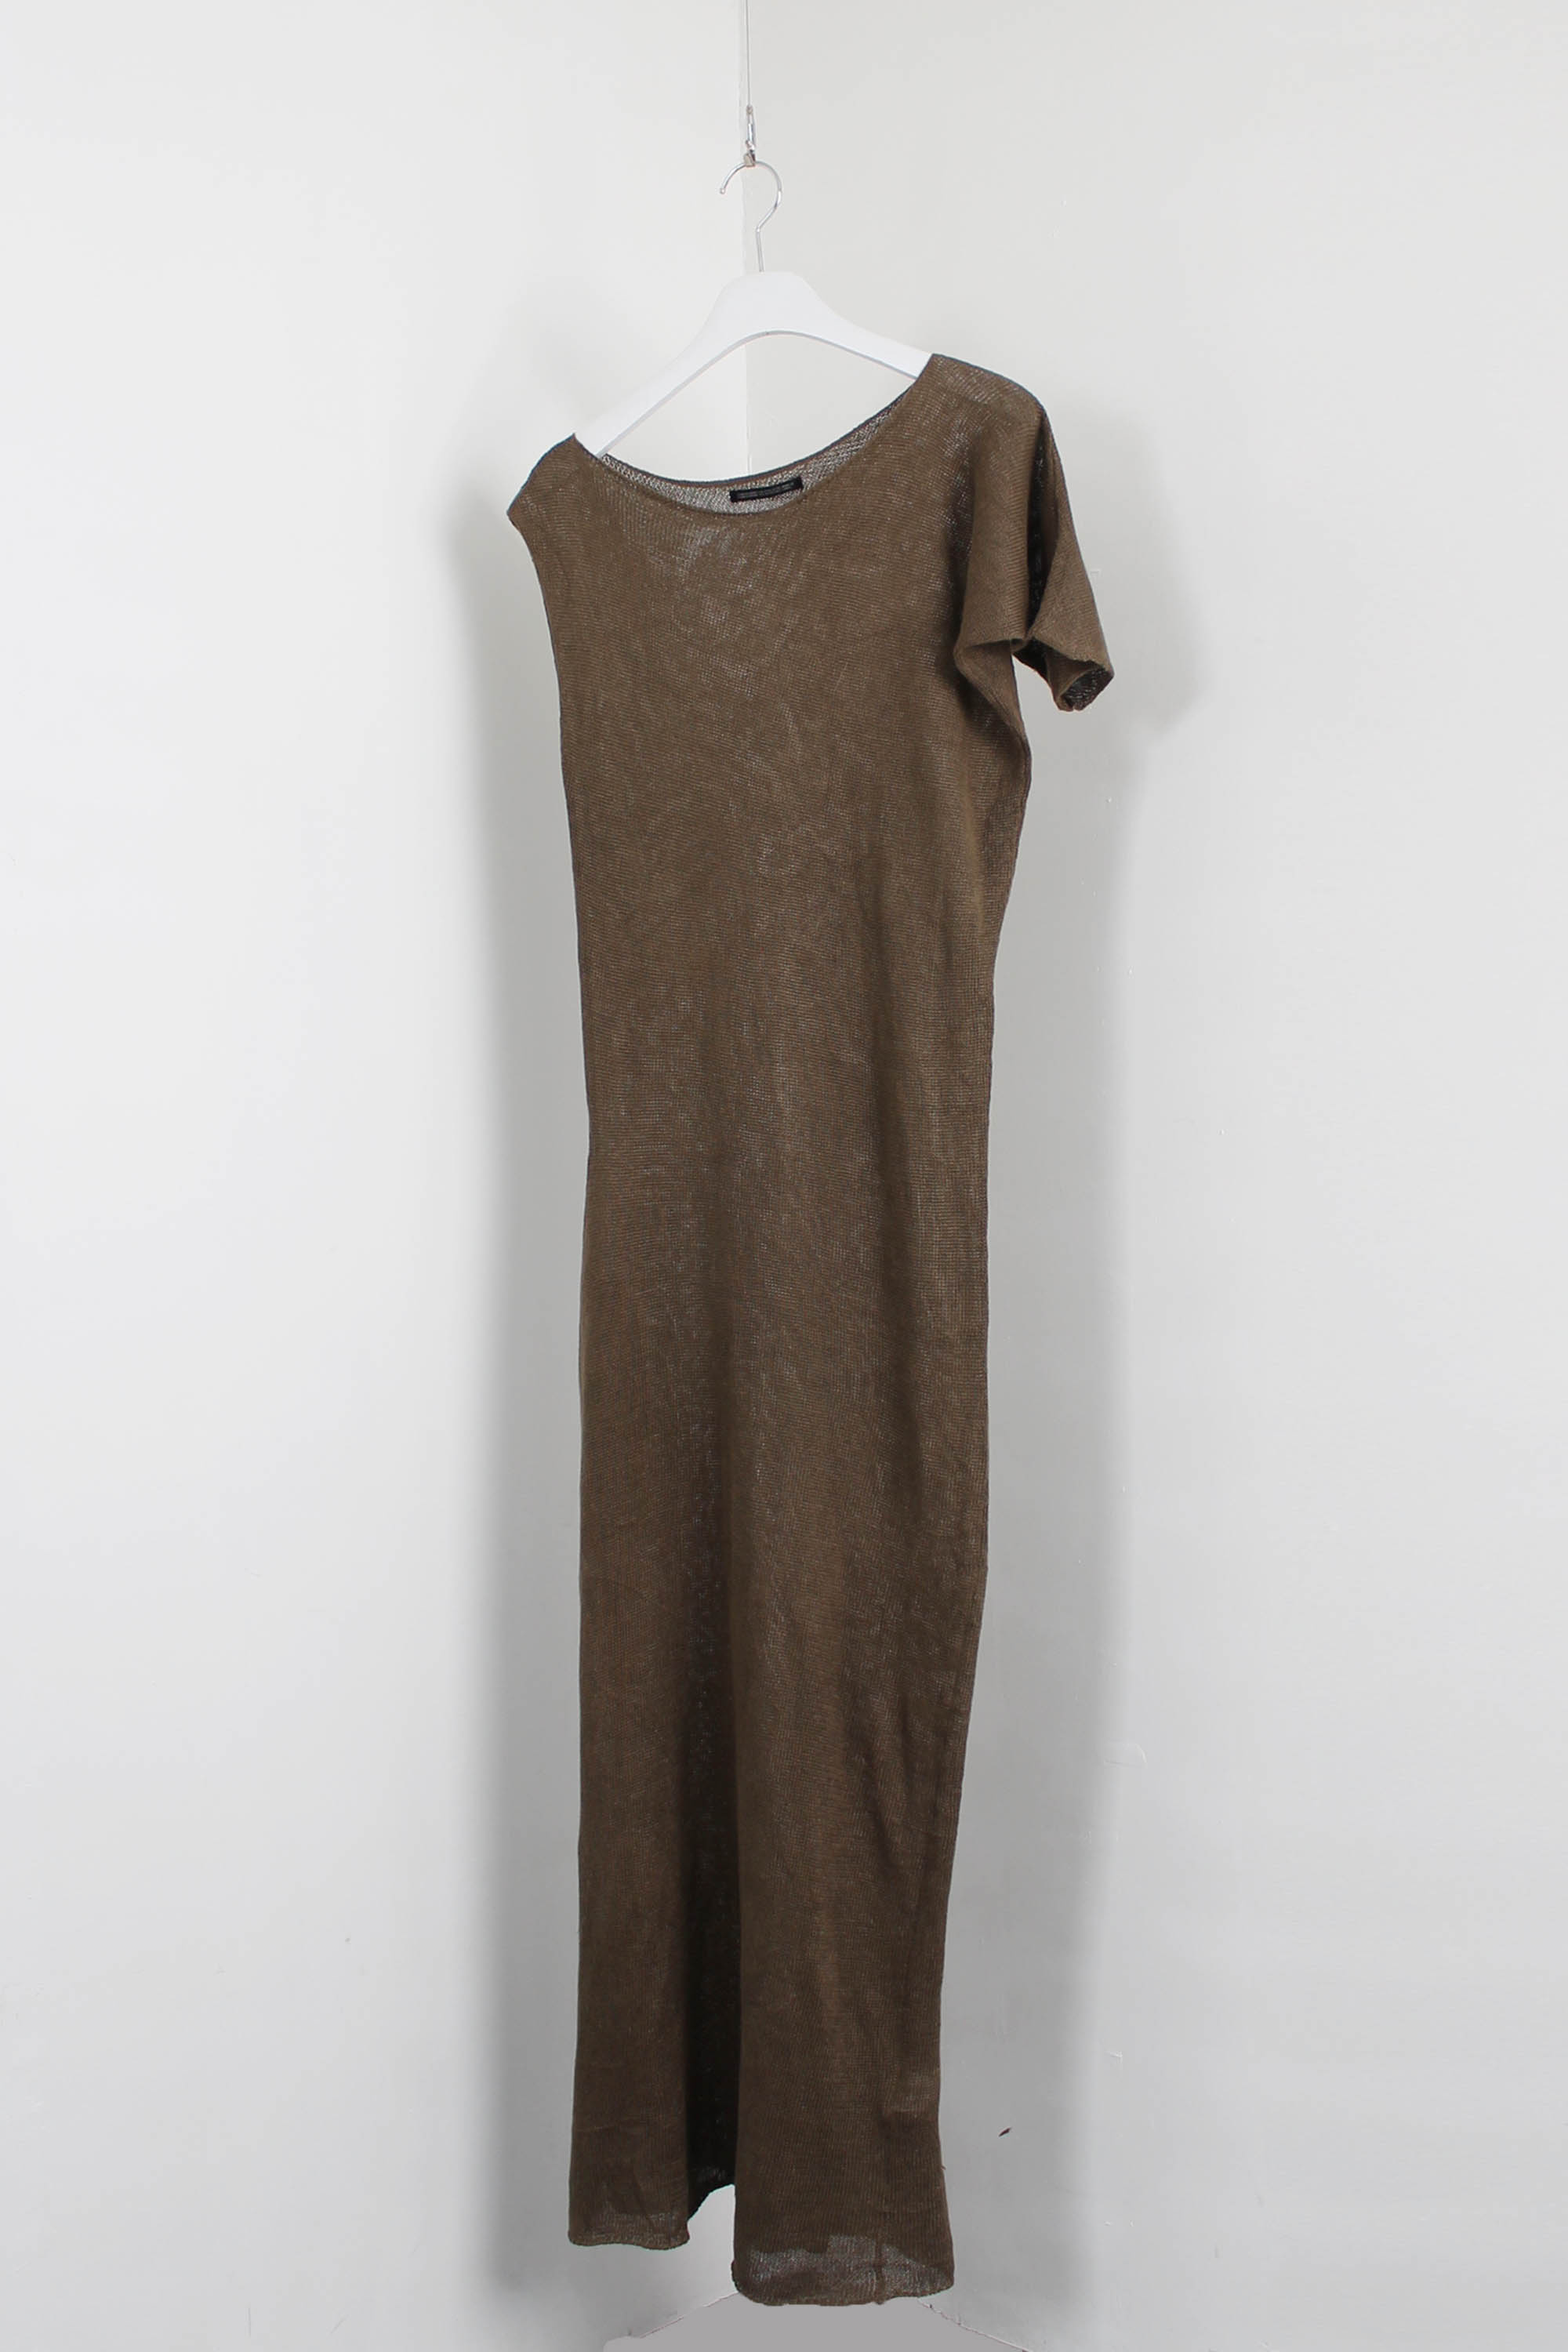 Yohji Yamamoto linen dress